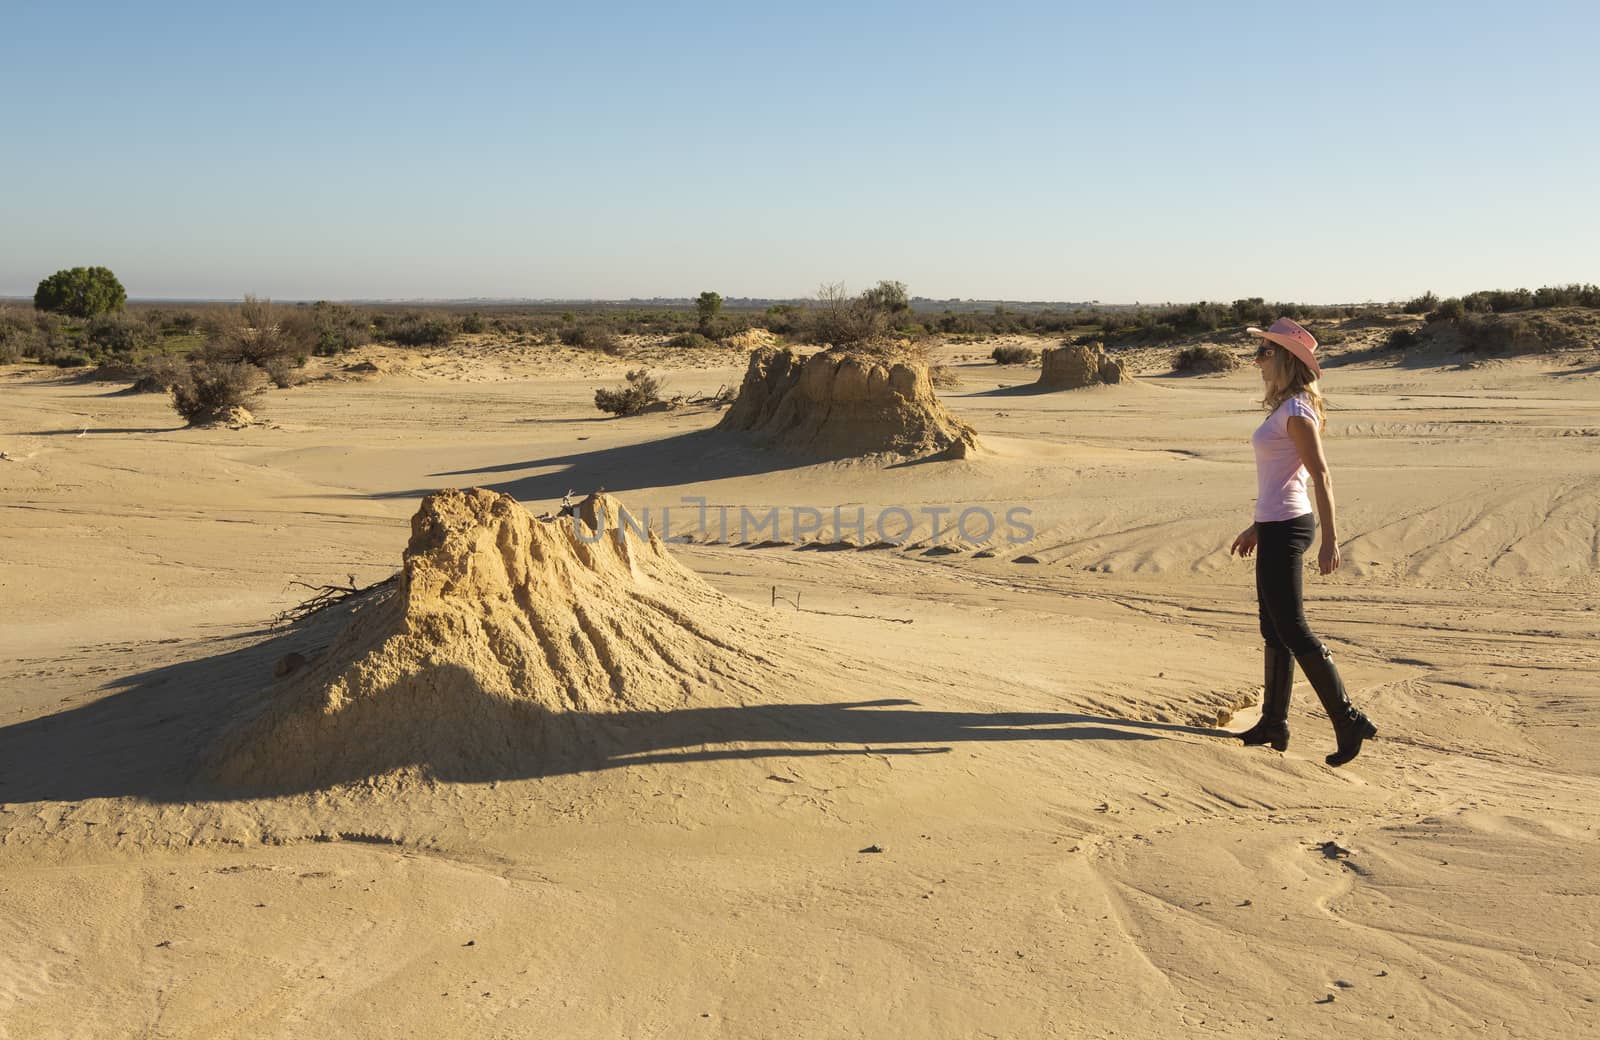 Woman in a desert landscape by lovleah